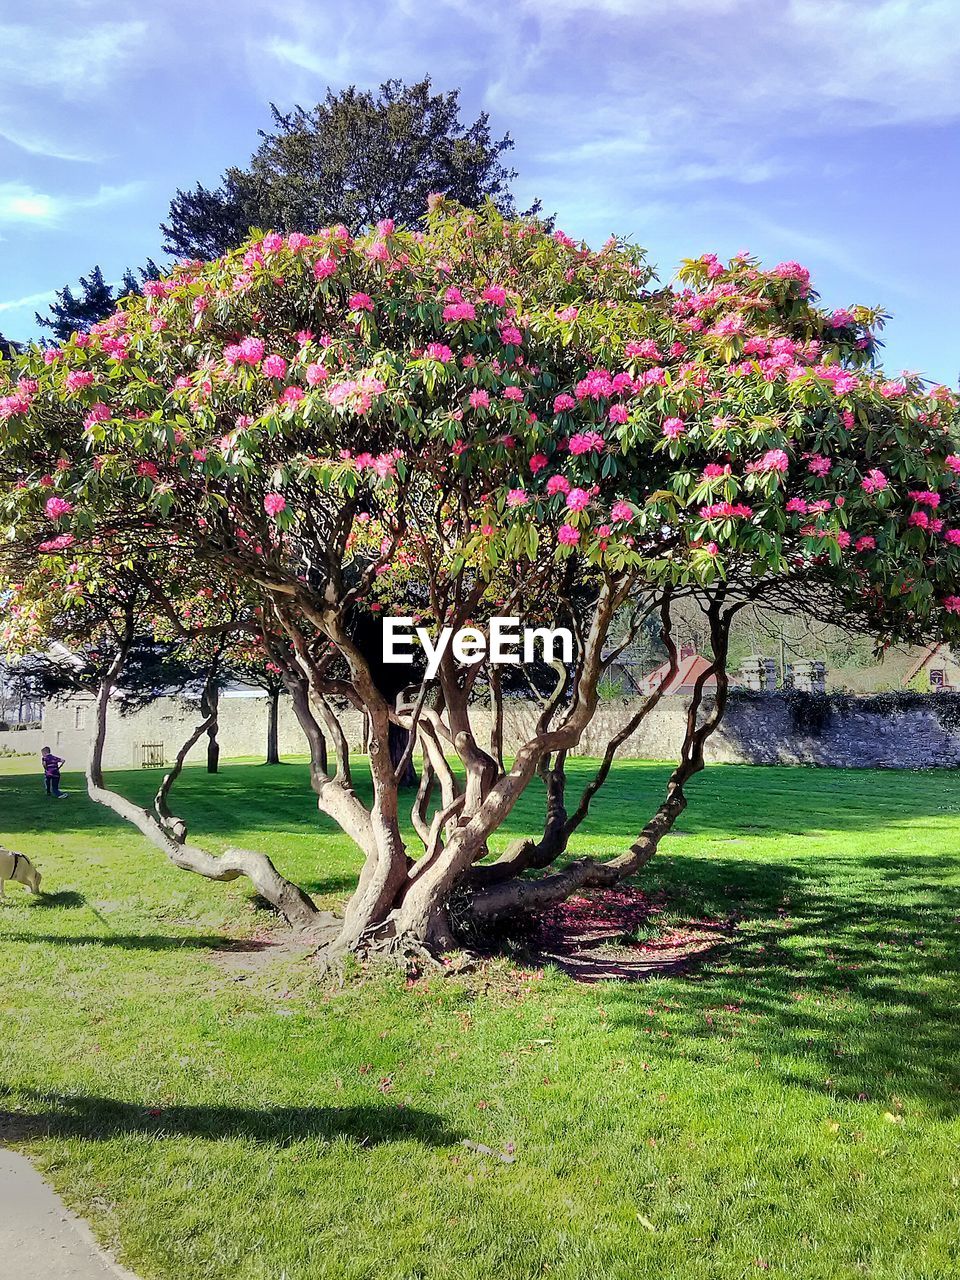 VIEW OF FRESH FLOWER TREE IN FIELD